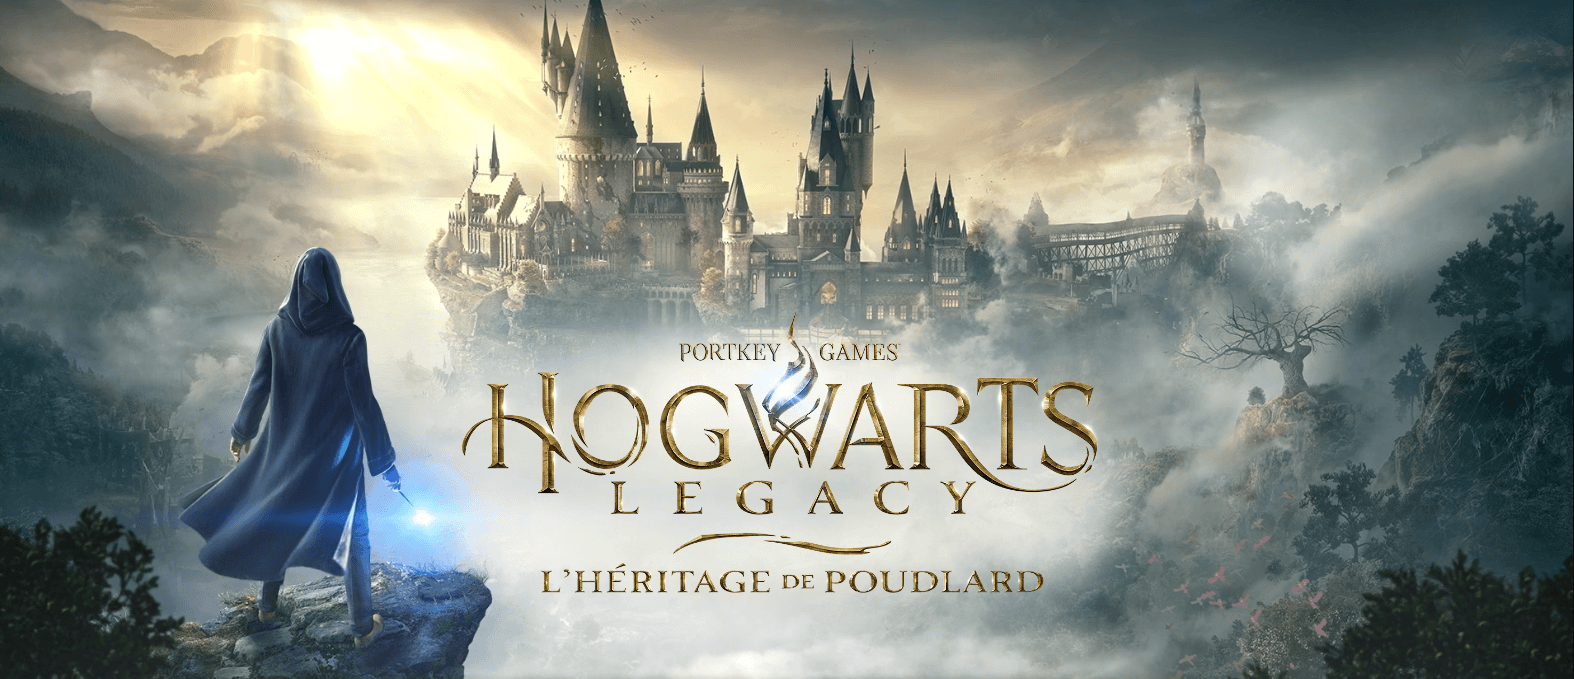 hogwarts legacy pc date de sortie